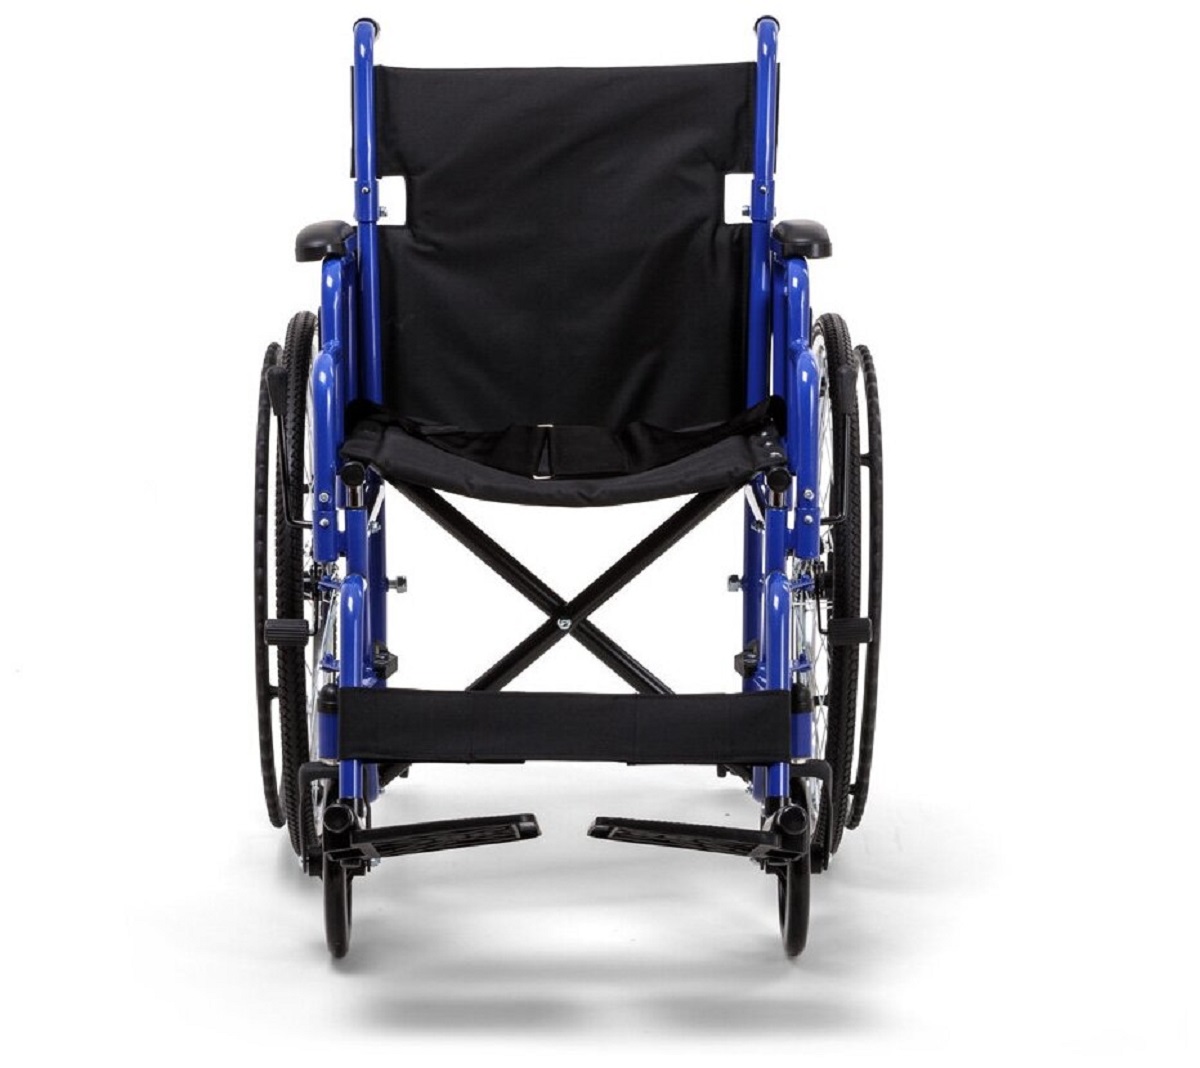 Армед н. Кресло-коляска для инвалидов Армед h 035. Армед коляска h035. Кресло-коляска н035 Армед. Инвалидная коляска Армед н035.